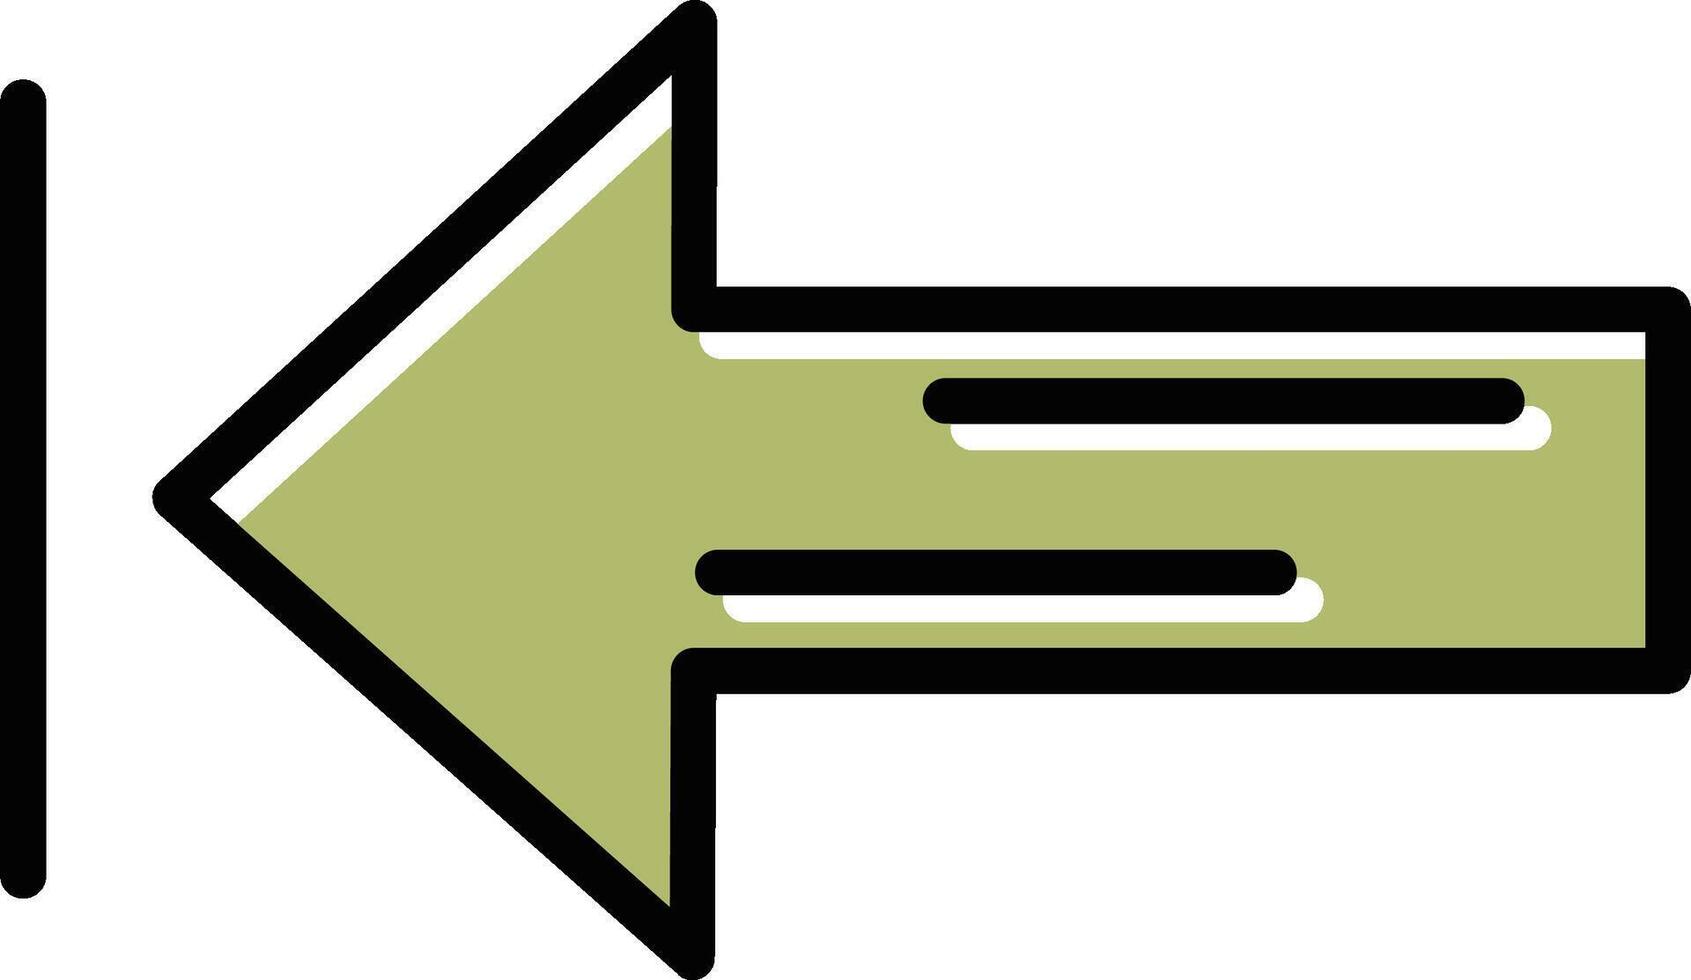 Right Arrow Vector Icon